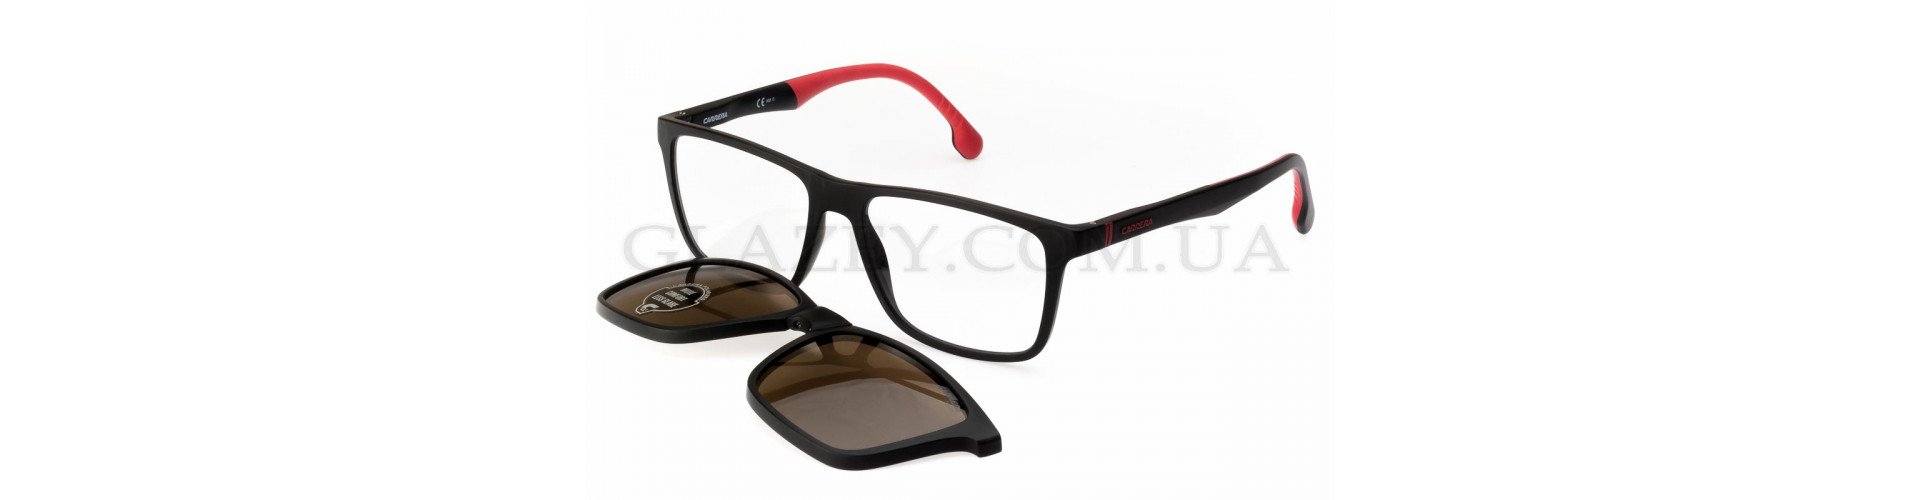 Полароид очки для зрения – оригинальное и качественное зрение